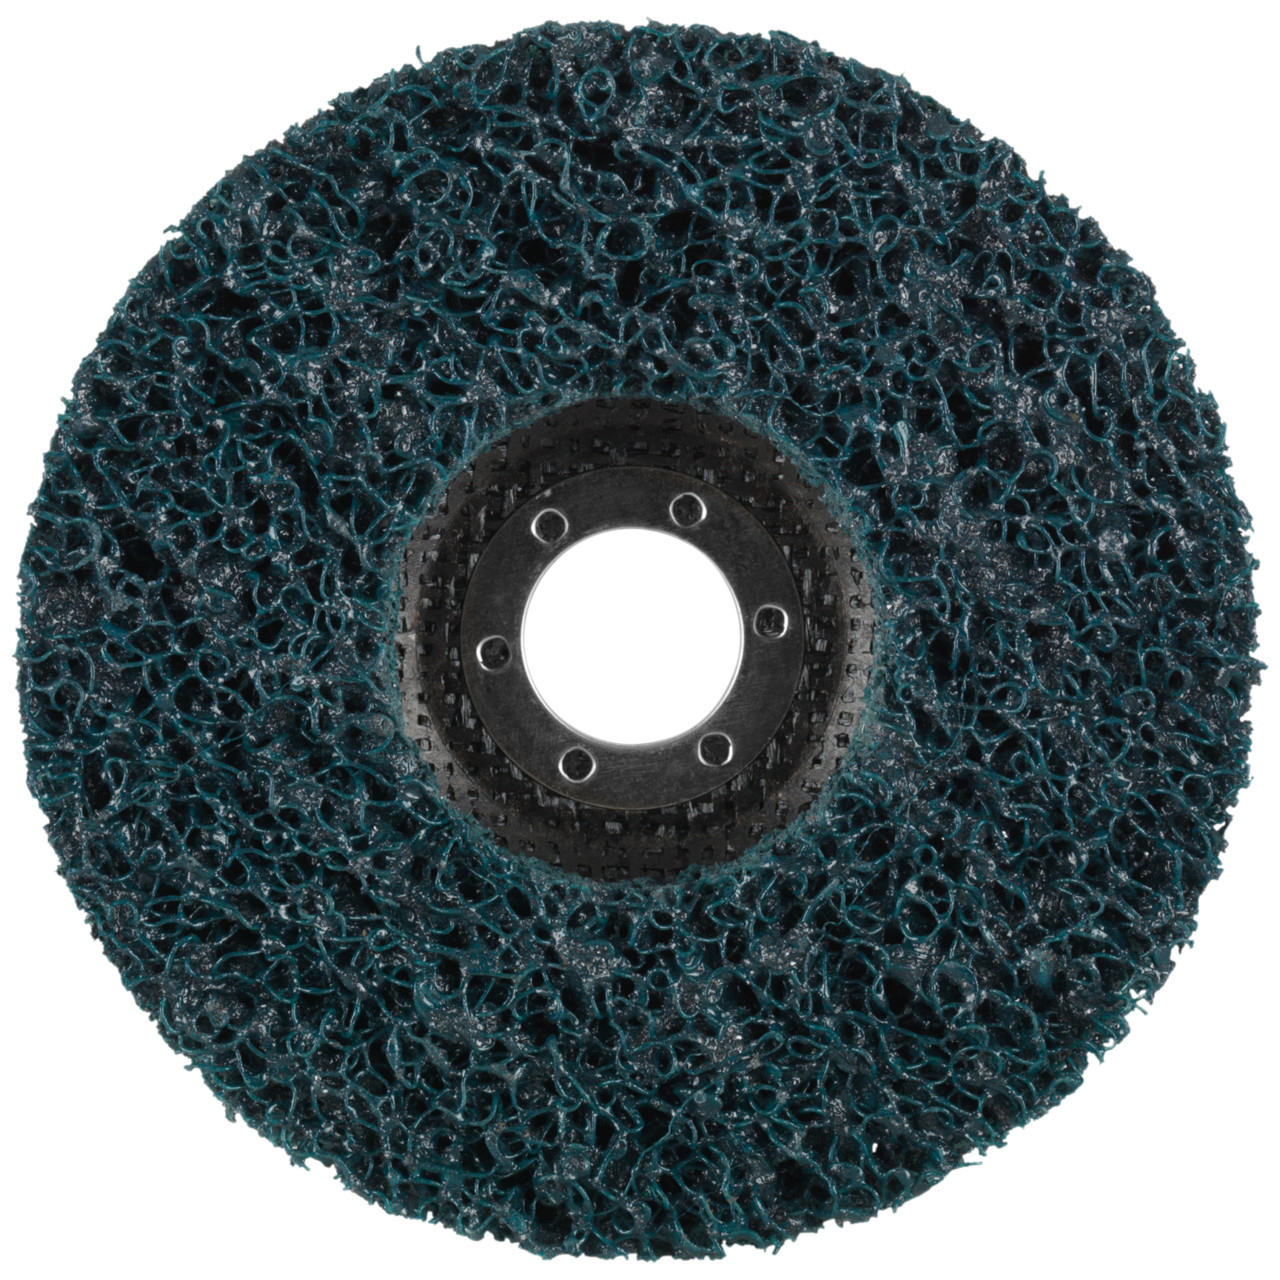 Tyrolit Disque de nettoyage grossier DxH 178x22,2 Utilisation universelle, C GROB, forme : 28- (disque de nettoyage grossier), art. 898018